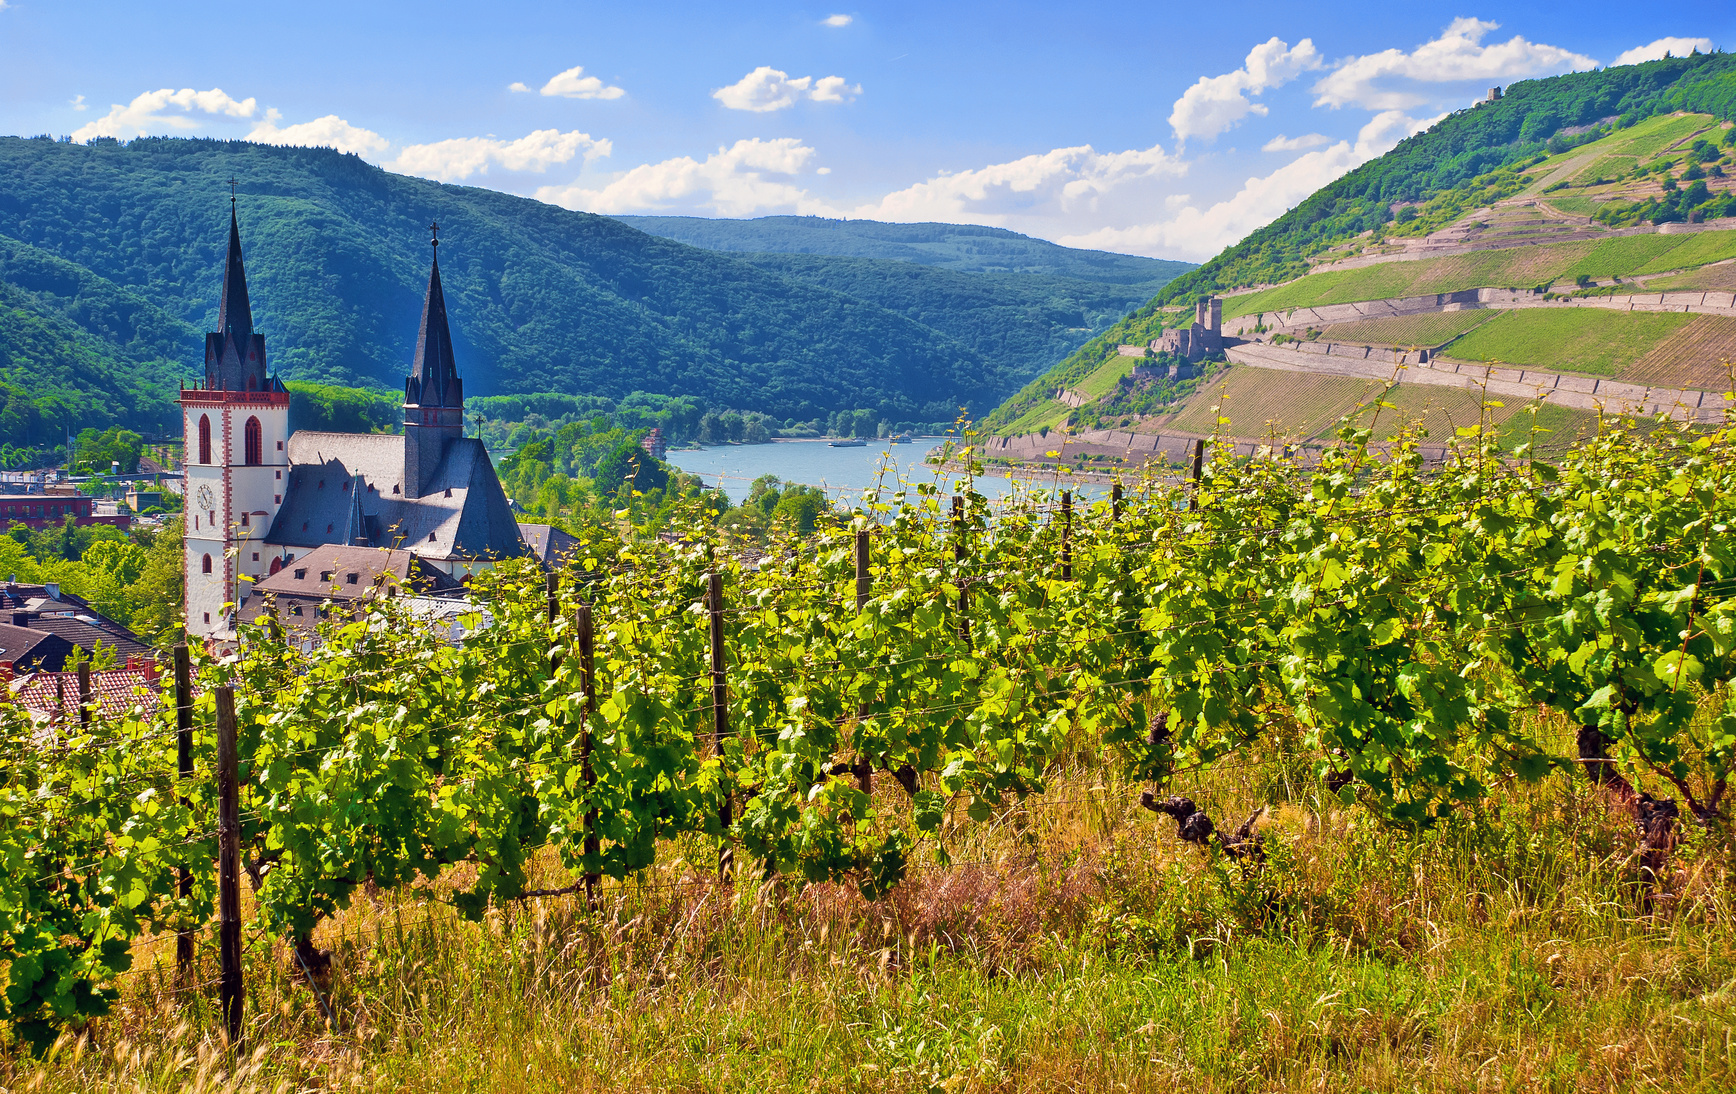 Die Pfalz-herrliche Gegend- leckerer Wein- Gemütlichkeit